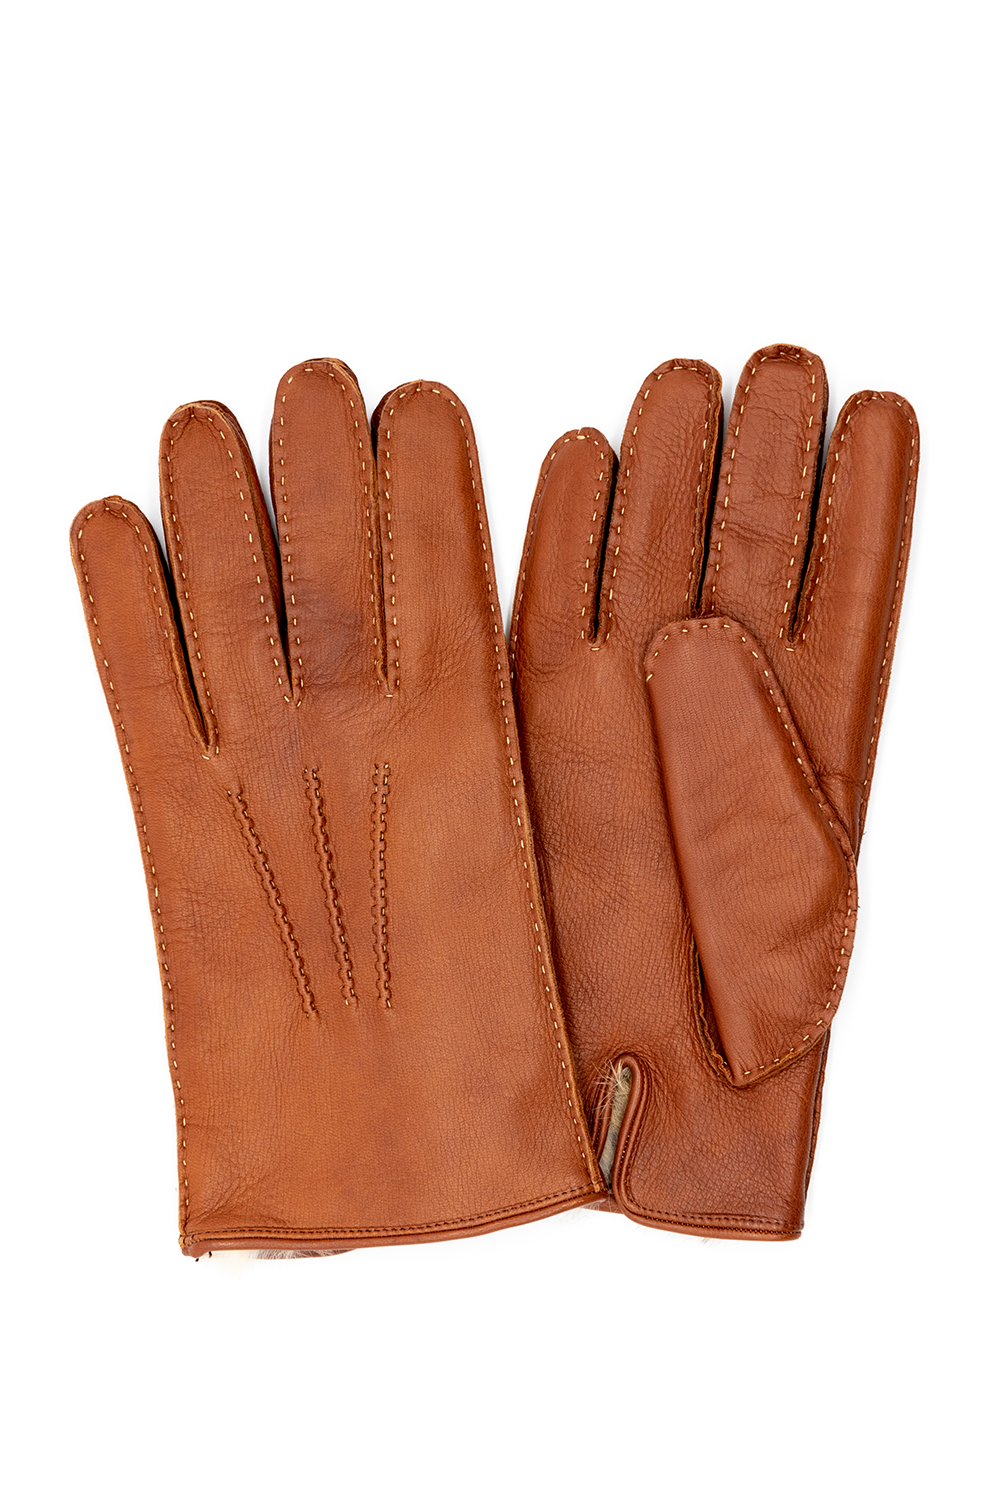 Native American Deerskin Gloves - Russet